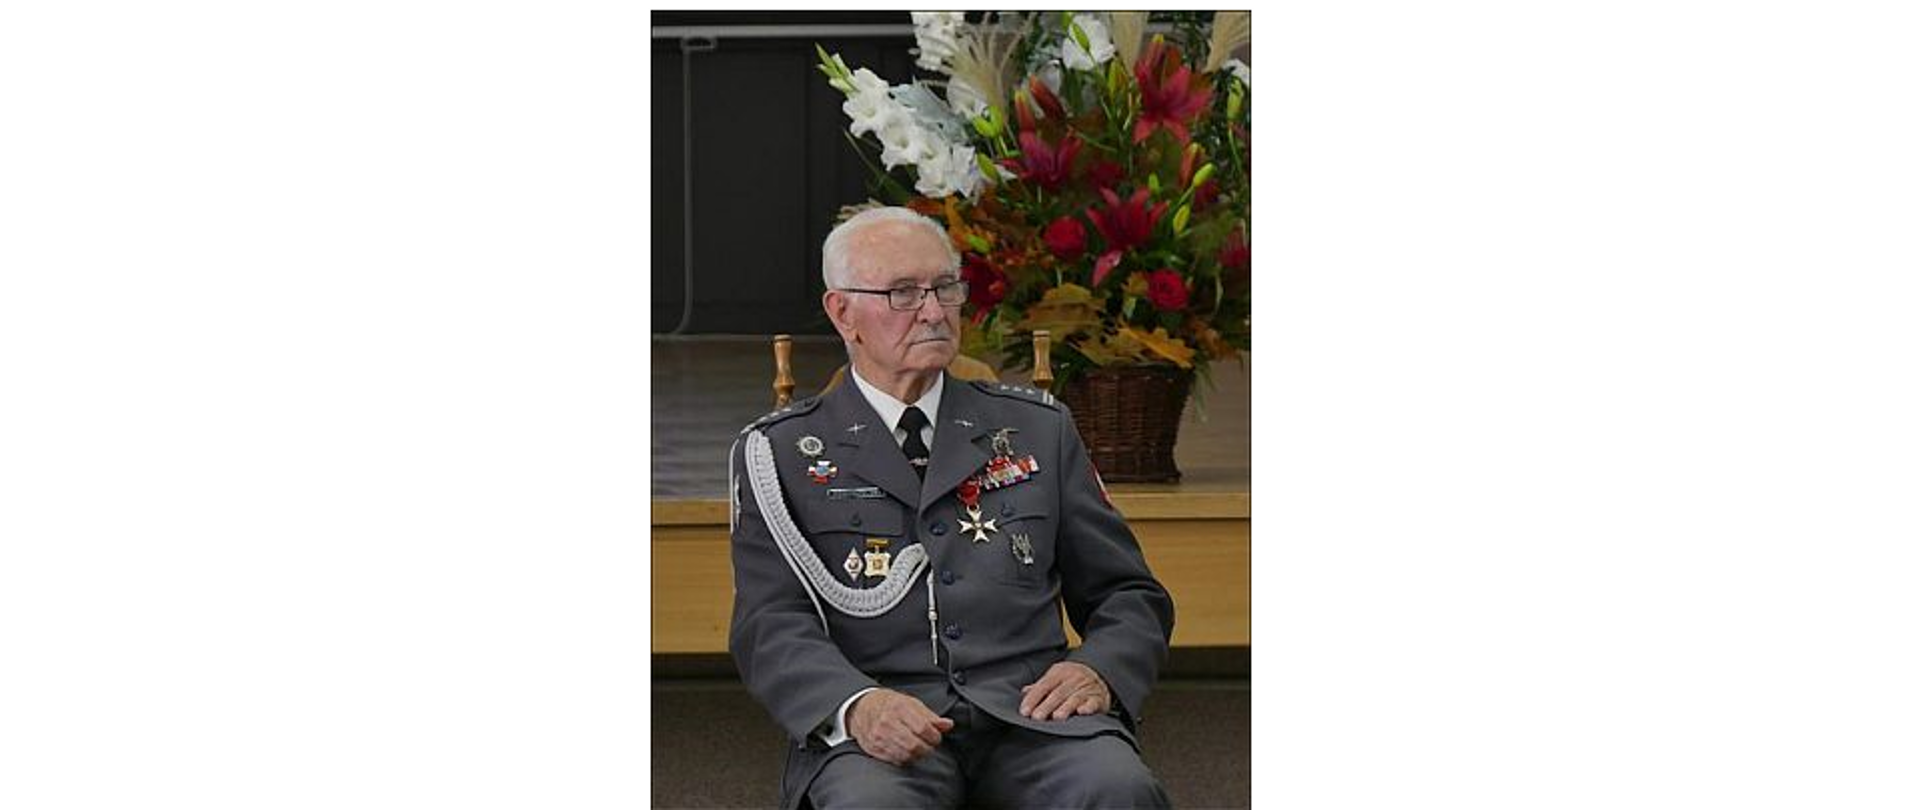 Na zdjęciu znajduje się Pułkownik pil. Kazimierz Pogorzelski ubrany w mundur z licznymi odznaczeniami. W tle scena z koszem pełnym kwiatów.